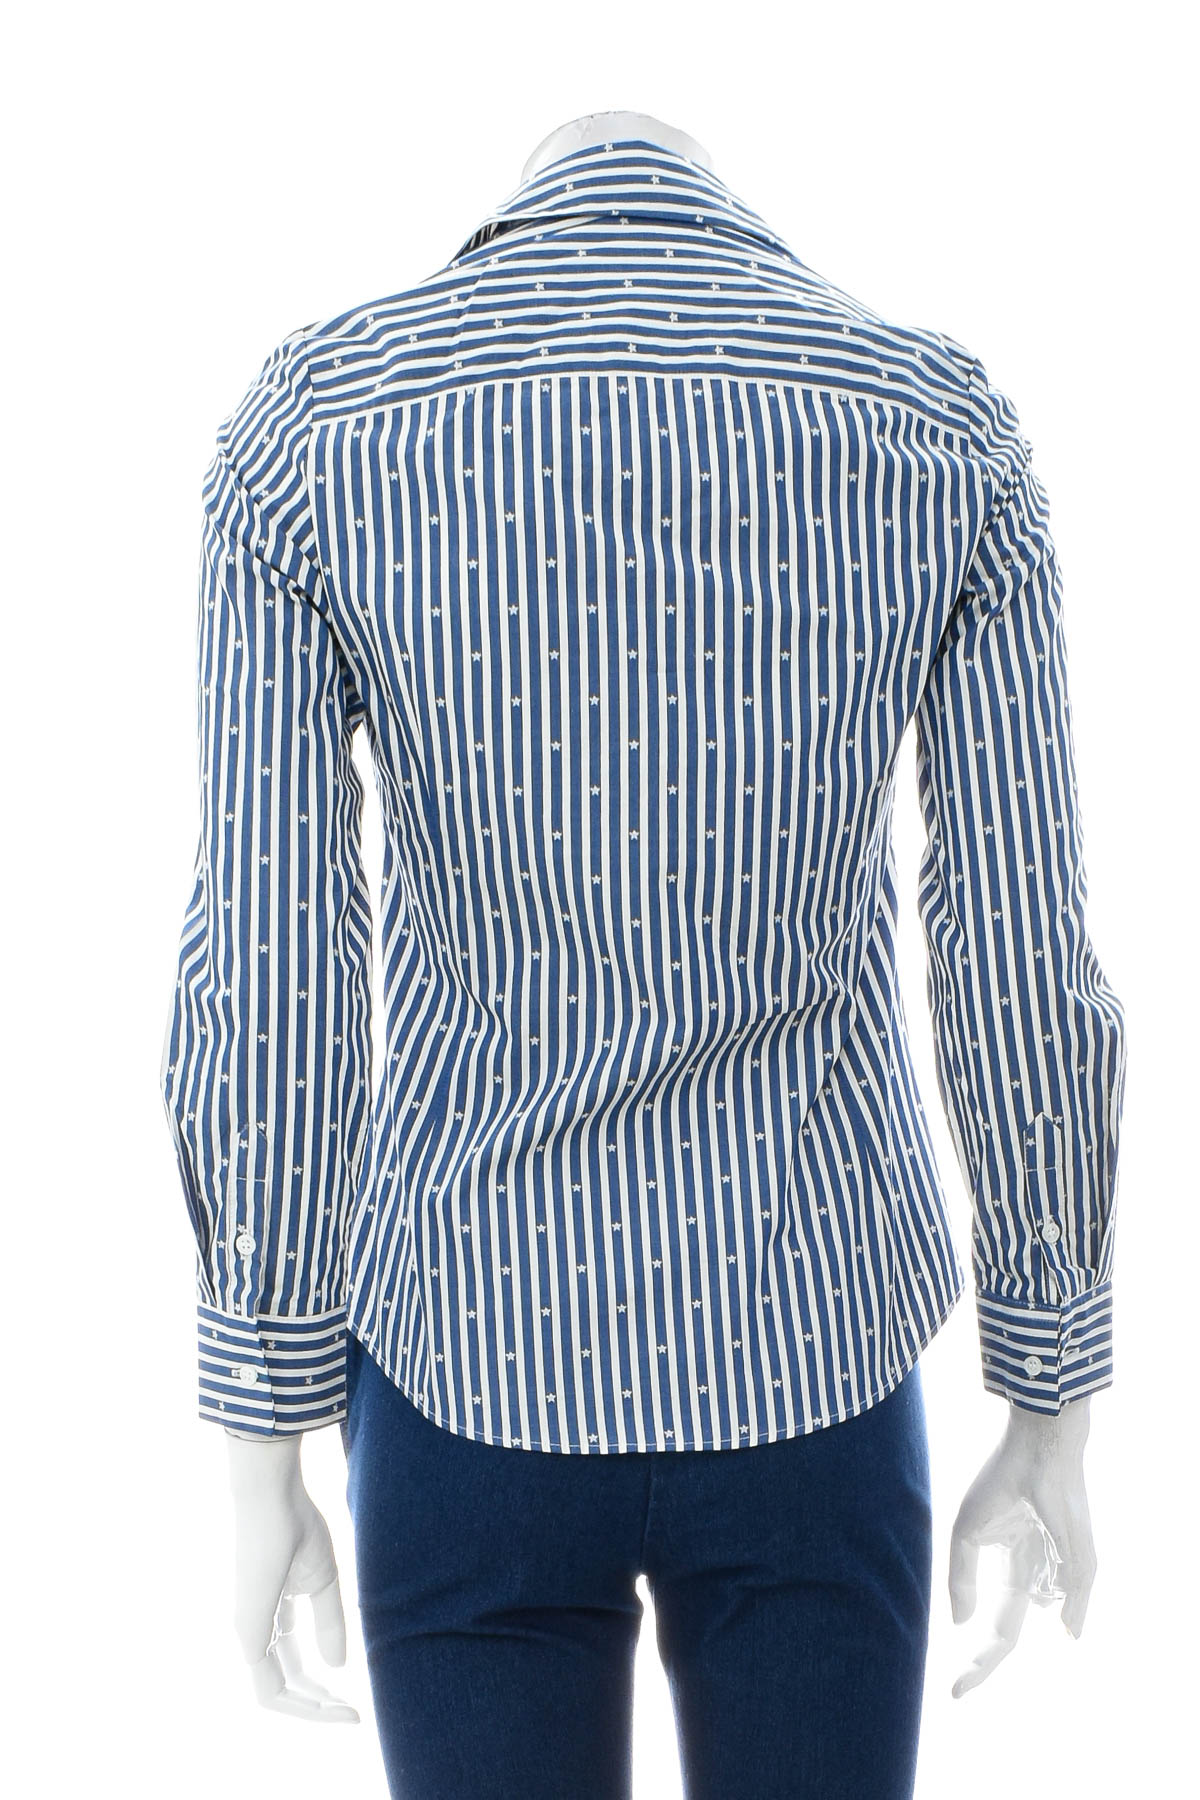 Γυναικείο πουκάμισο - Maximo Donati - 1